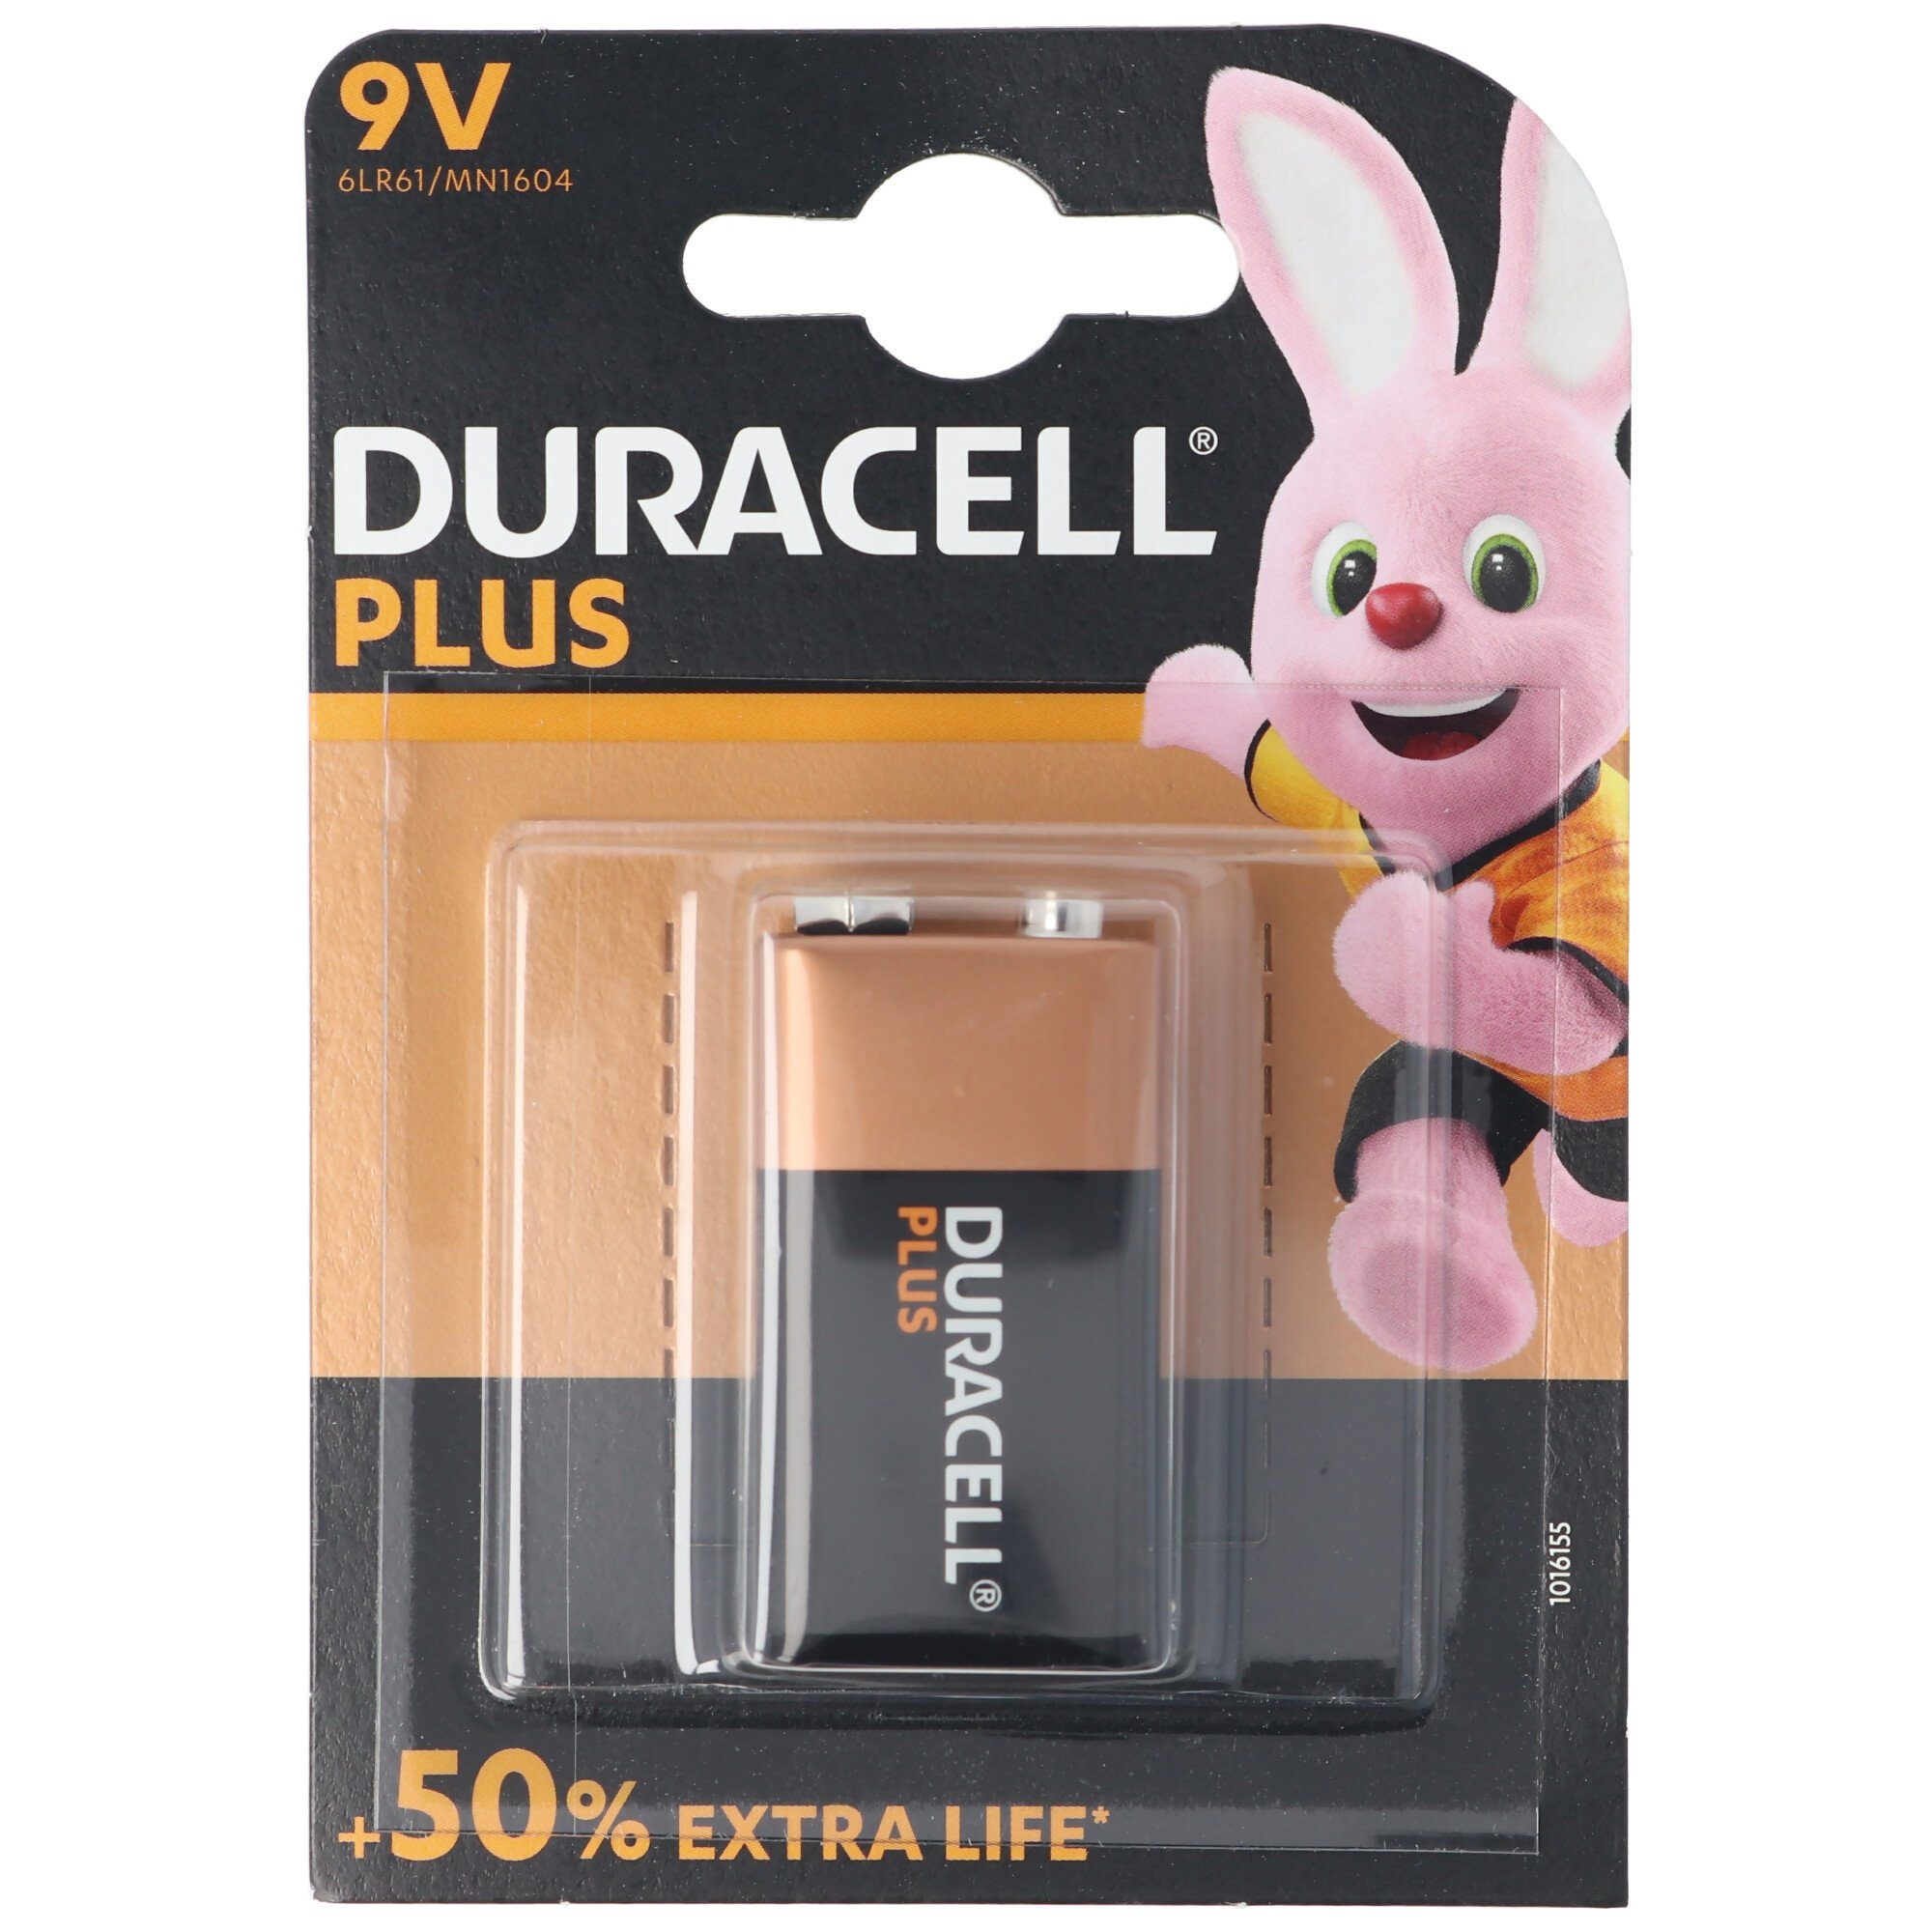 Duracell DURACELL Plus 9 Volt/6LR61 1er Pack 9V Alkaline Batterie E-Block Batterie, (9,0 V)